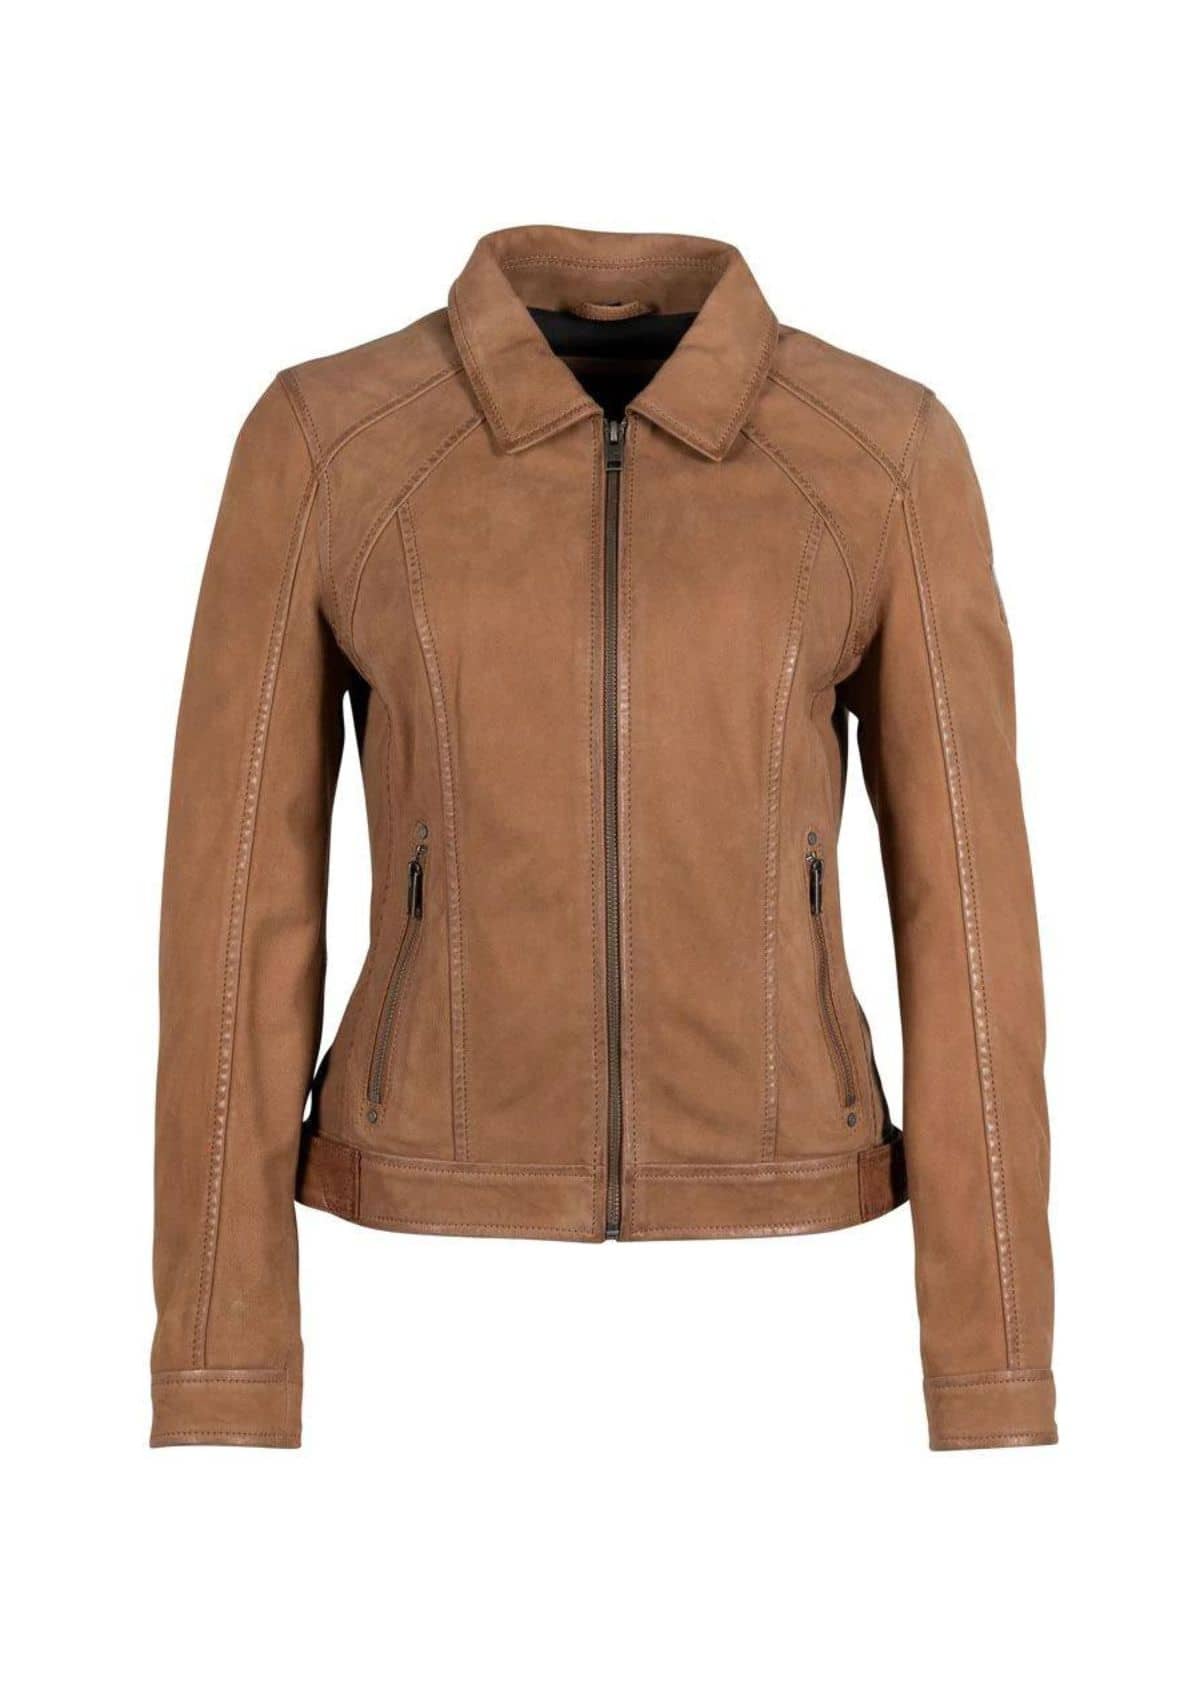 Sunny Sunset Leather Jacket- Cognac -Mauritius GmbH Int. Fashion- Ruby Jane-